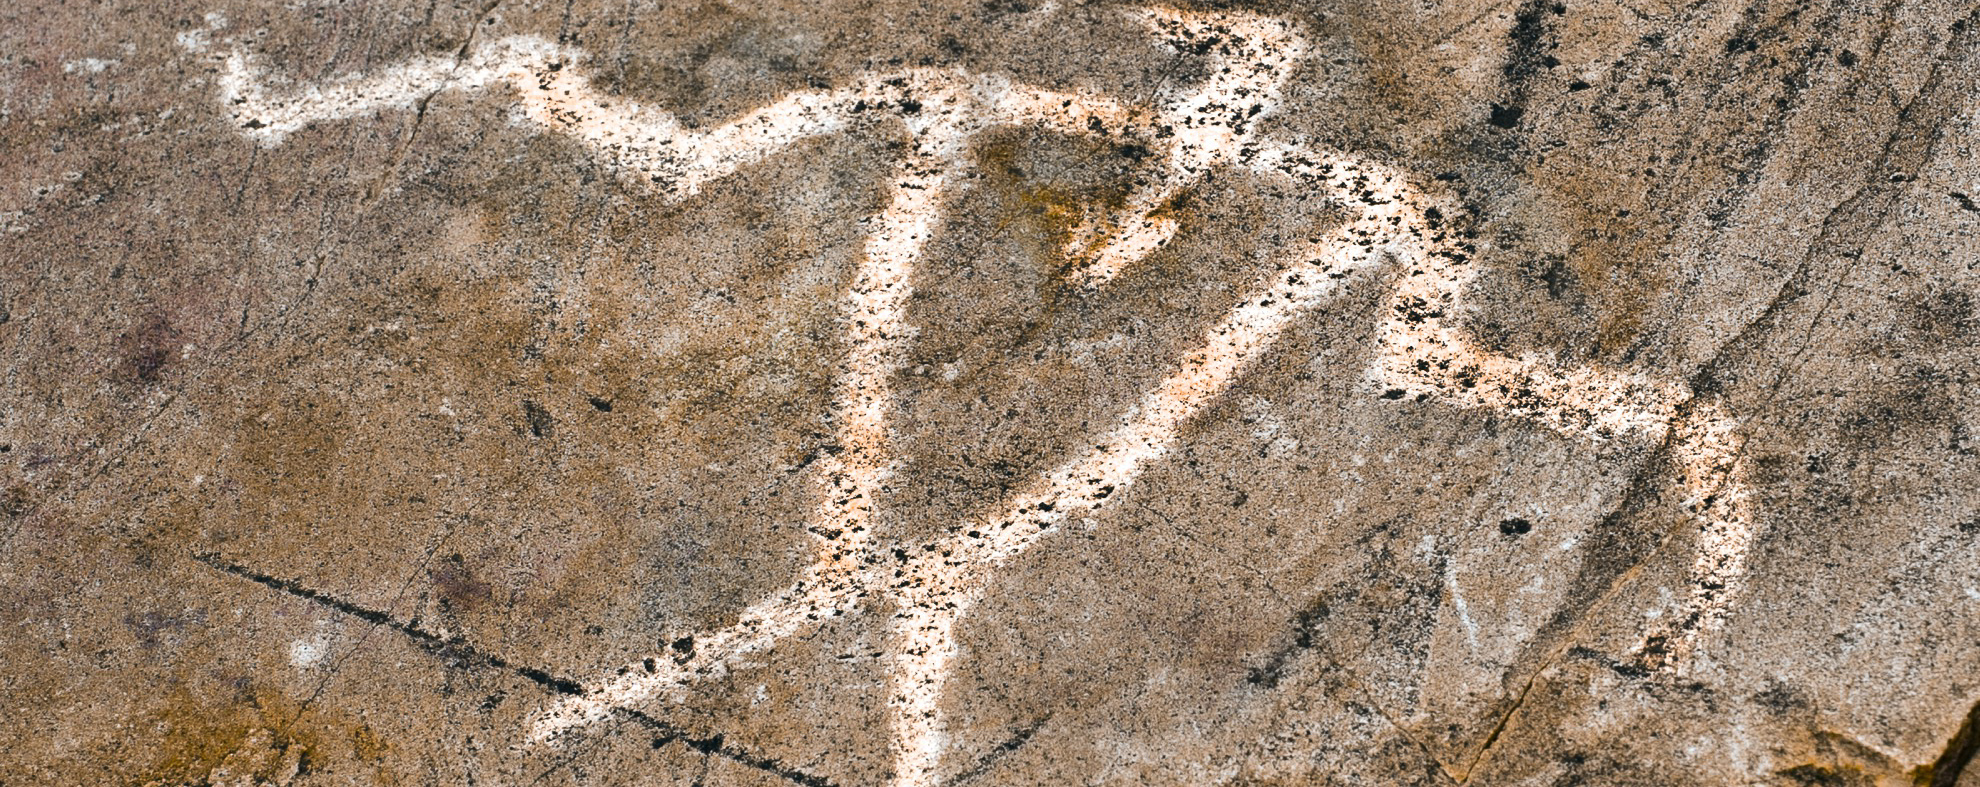 Dónde ver petroglifos en los Estados Unidos - 19